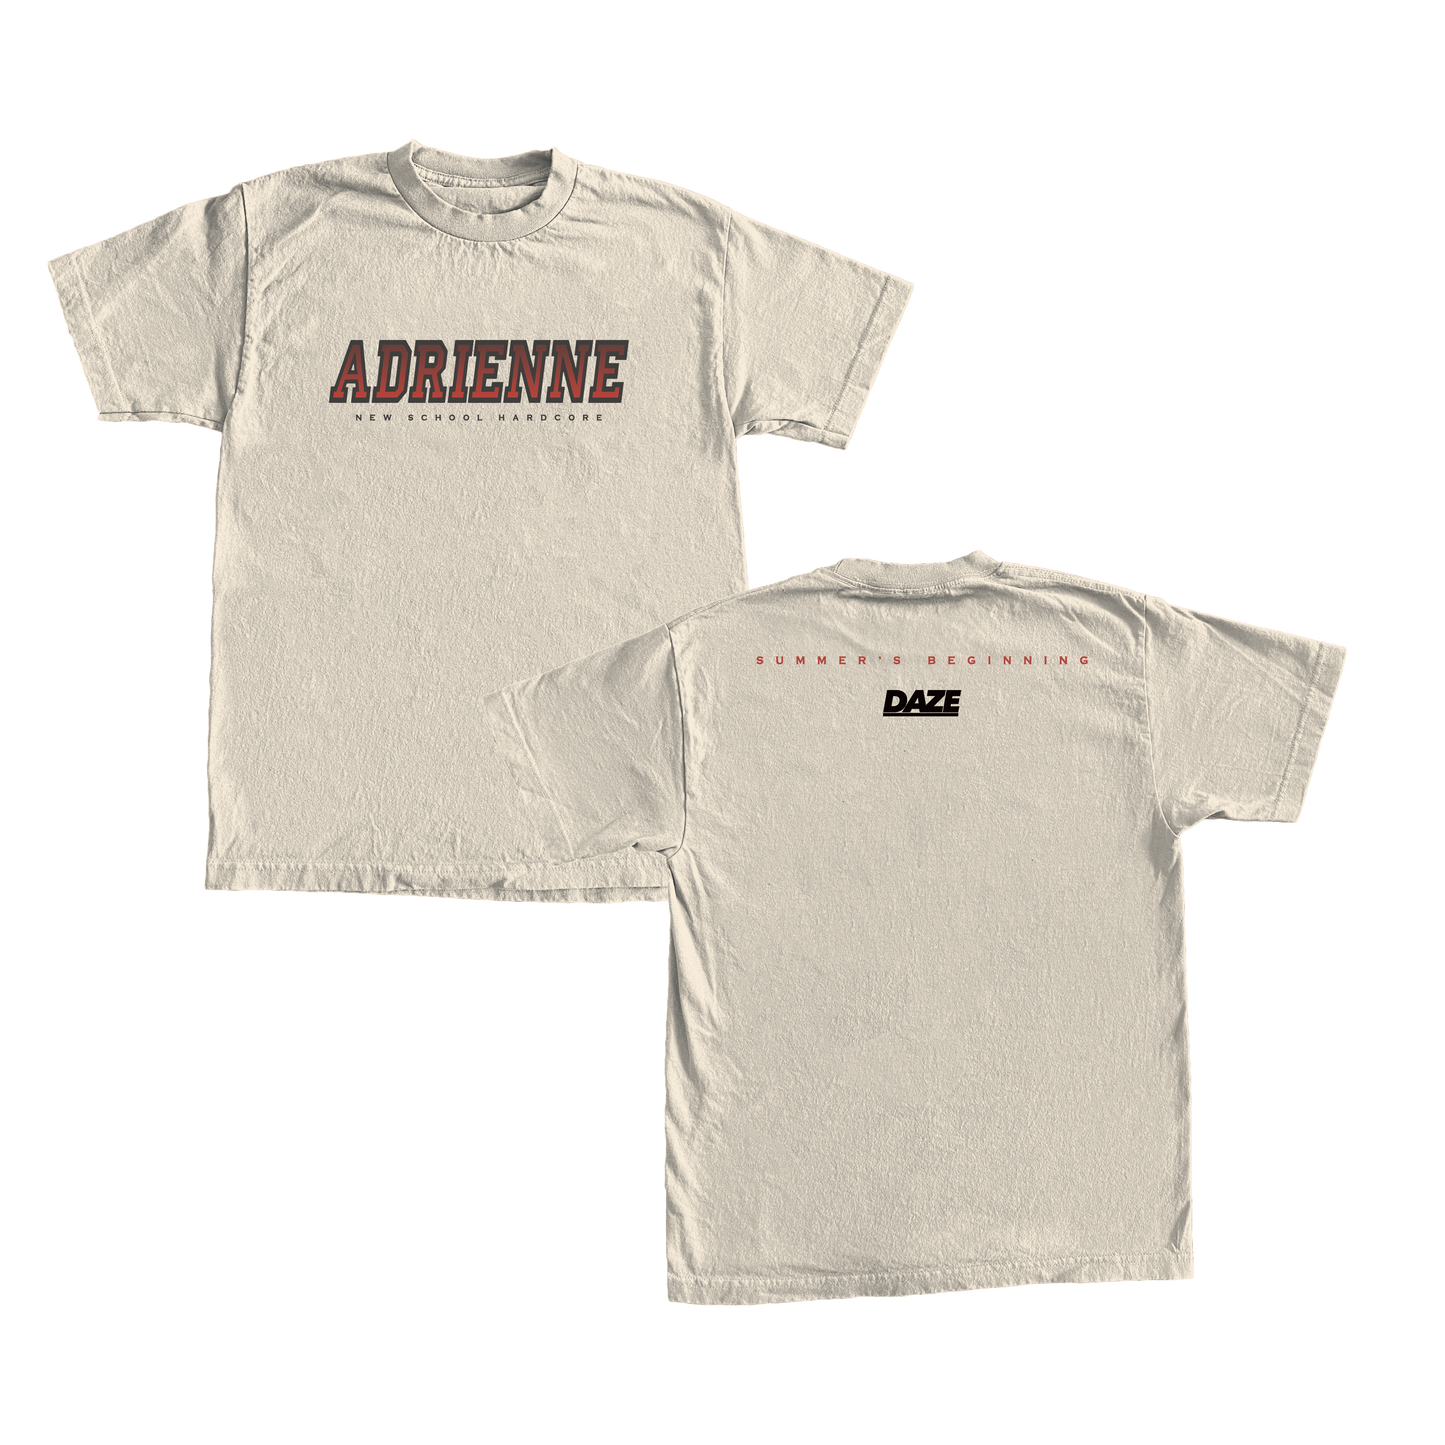 Adrienne - Summer's Beginning Shirt (Ivory) (Pre-Order)